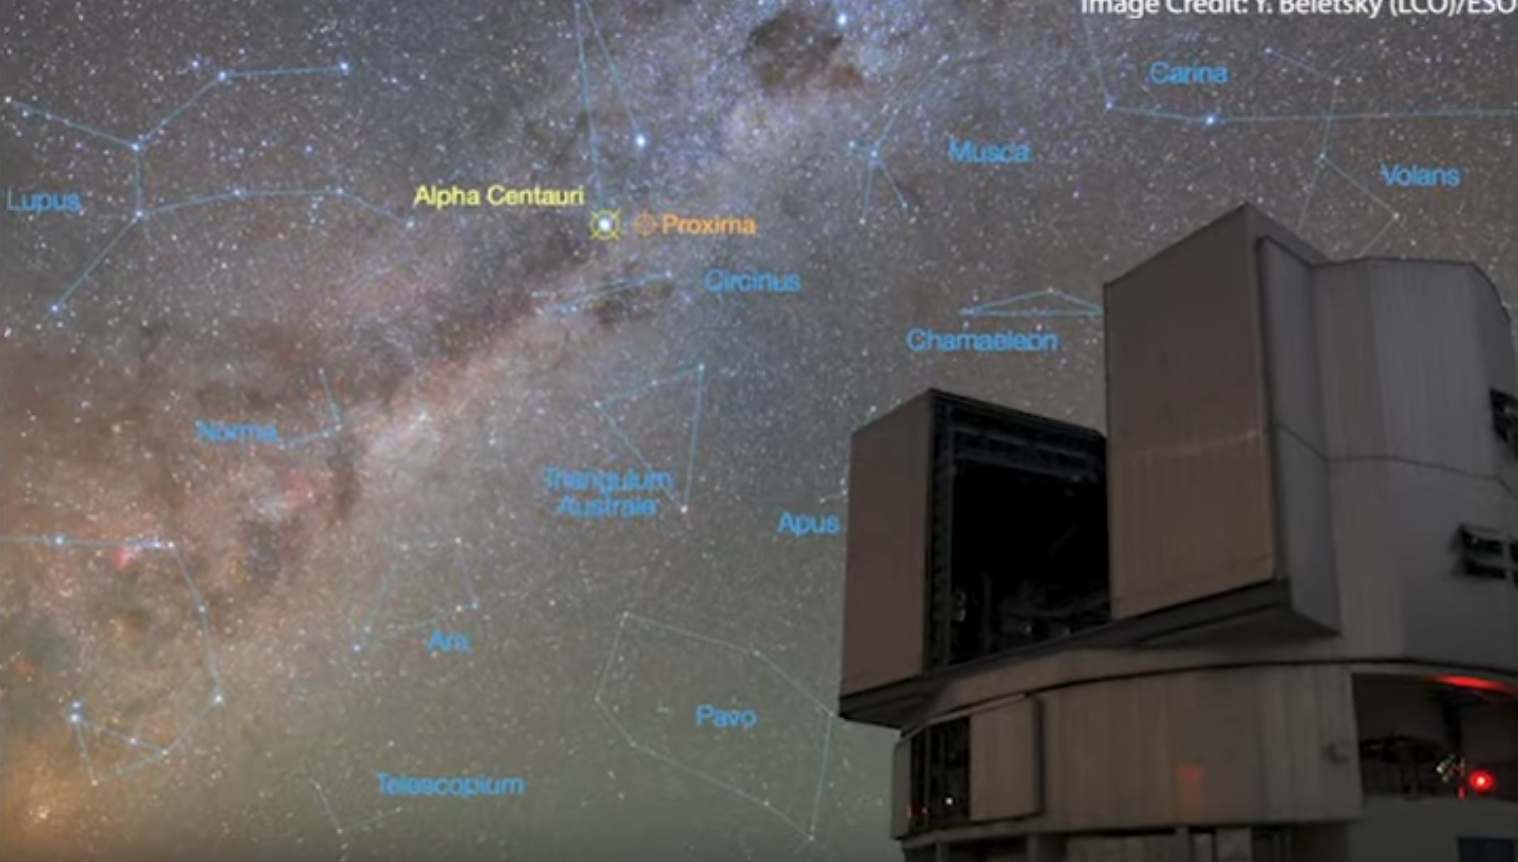 Imagerie des exoplanètes dans les zones habitables des étoiles proches